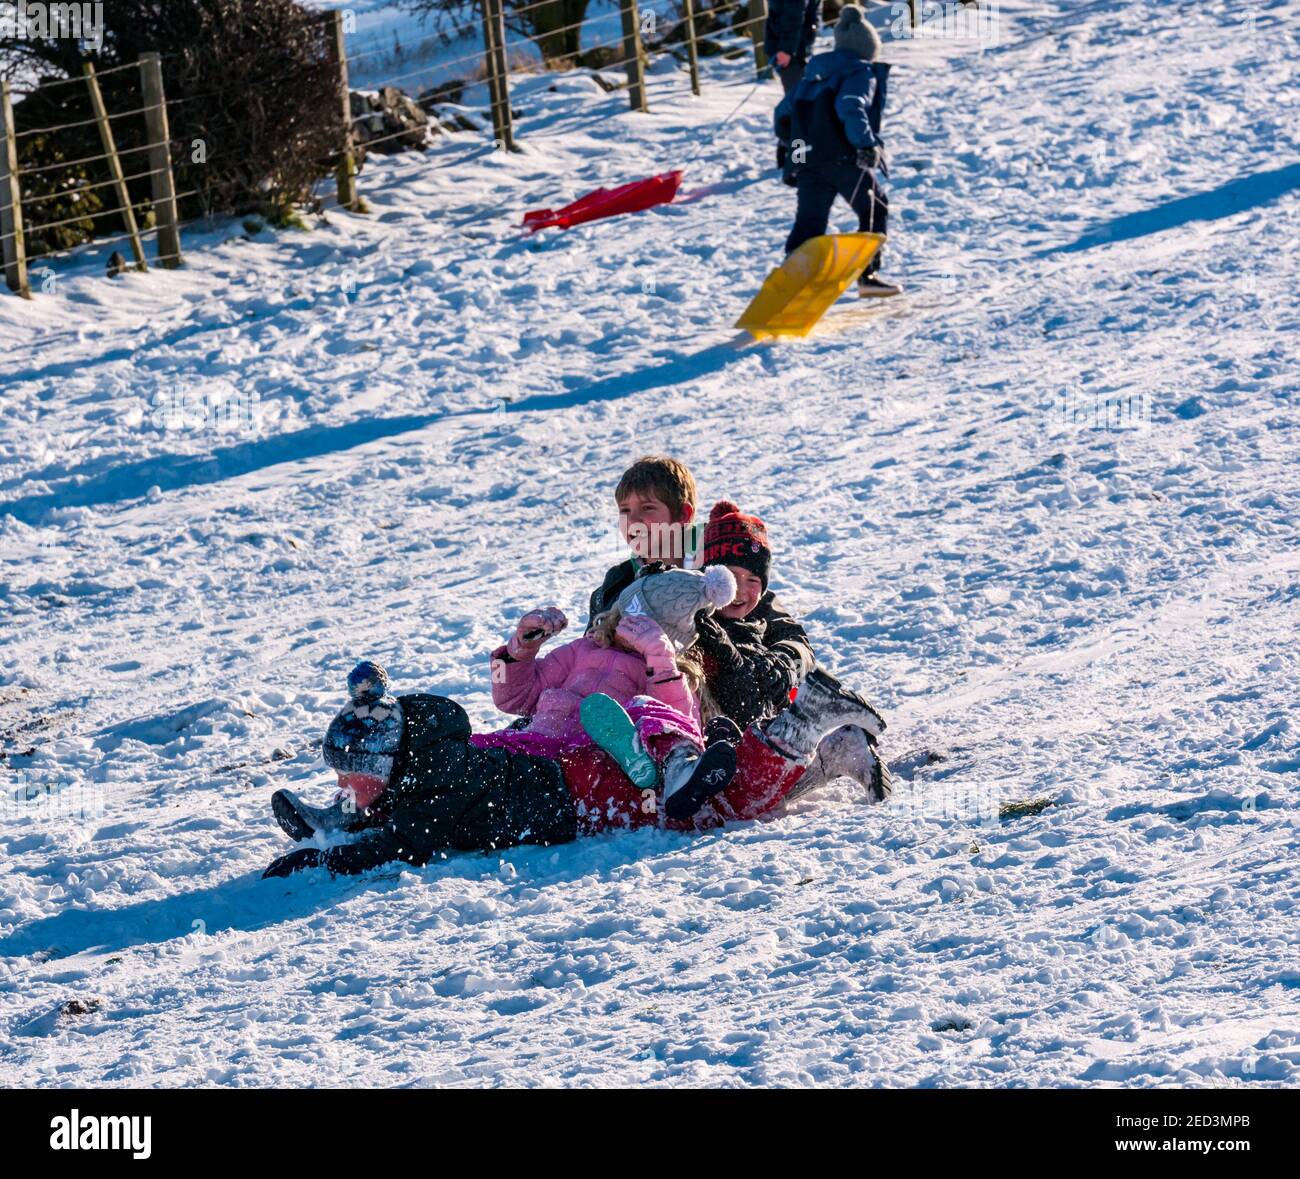 Vier Kinder, die Spaß haben, auf einem Schlitten im Winter Schnee und Sonnenschein, East Lothian, Schottland, Großbritannien, einen Hang hinunter zu gleiten Stockfoto